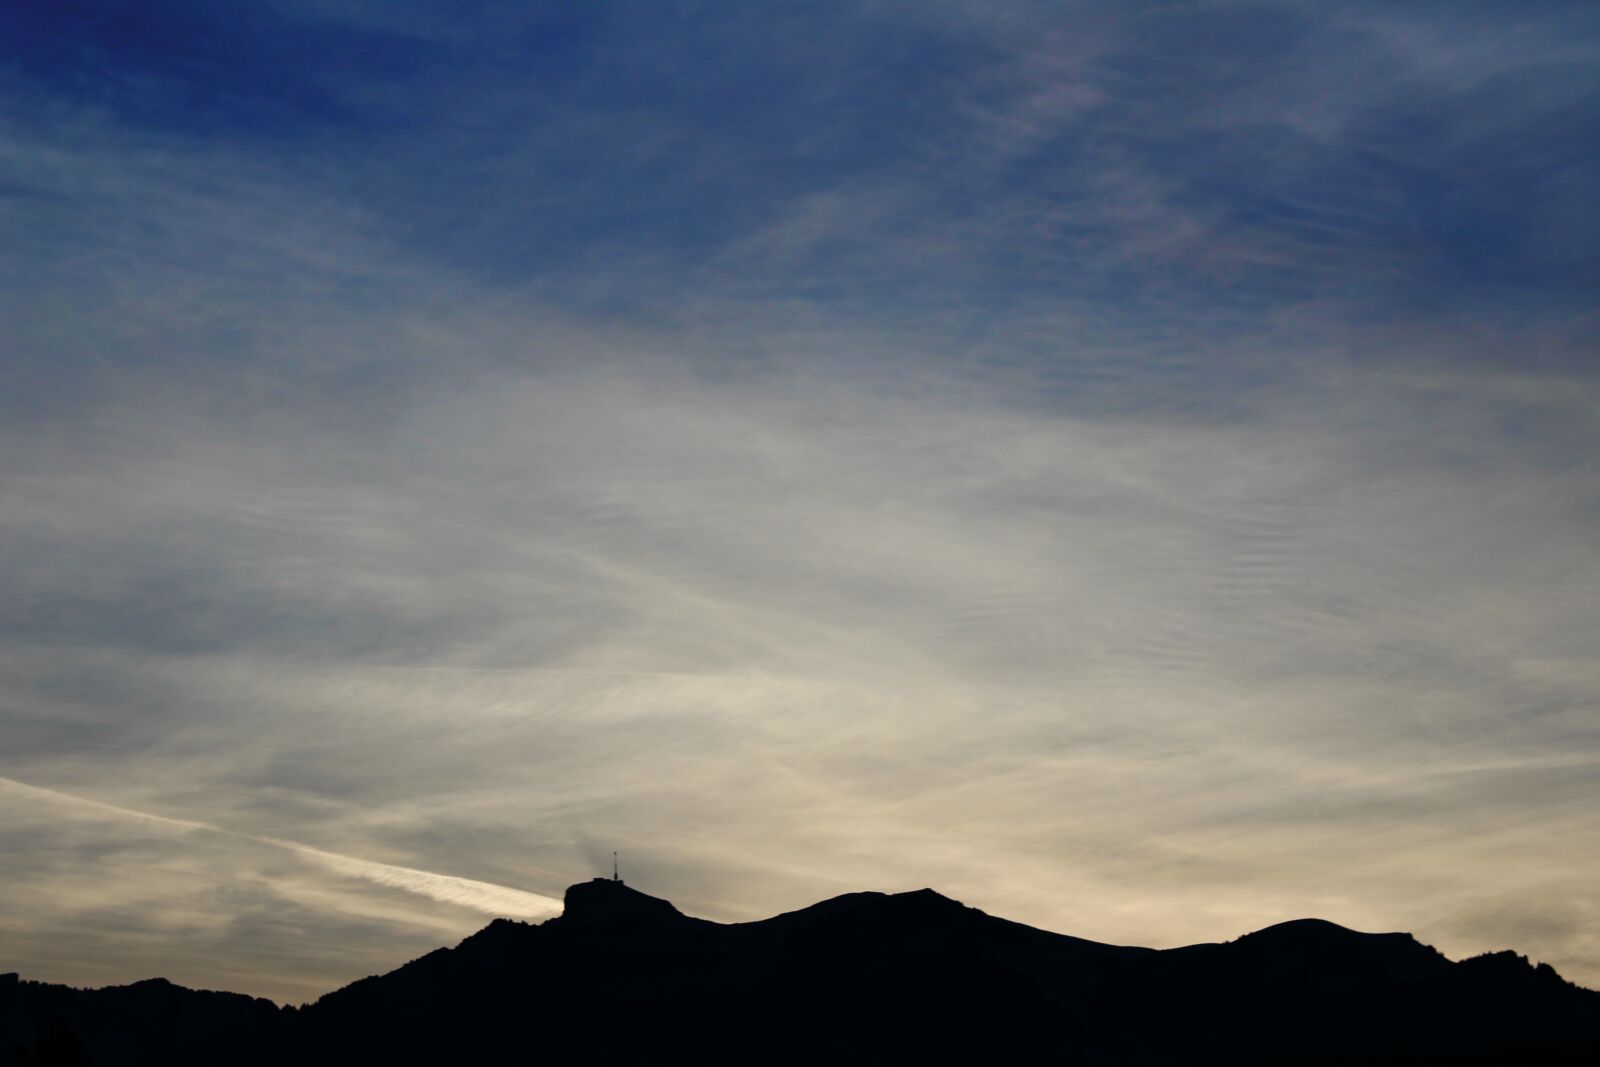 Canon EOS 1200D (EOS Rebel T5 / EOS Kiss X70 / EOS Hi) sample photo. Mountain, sky, evening photography